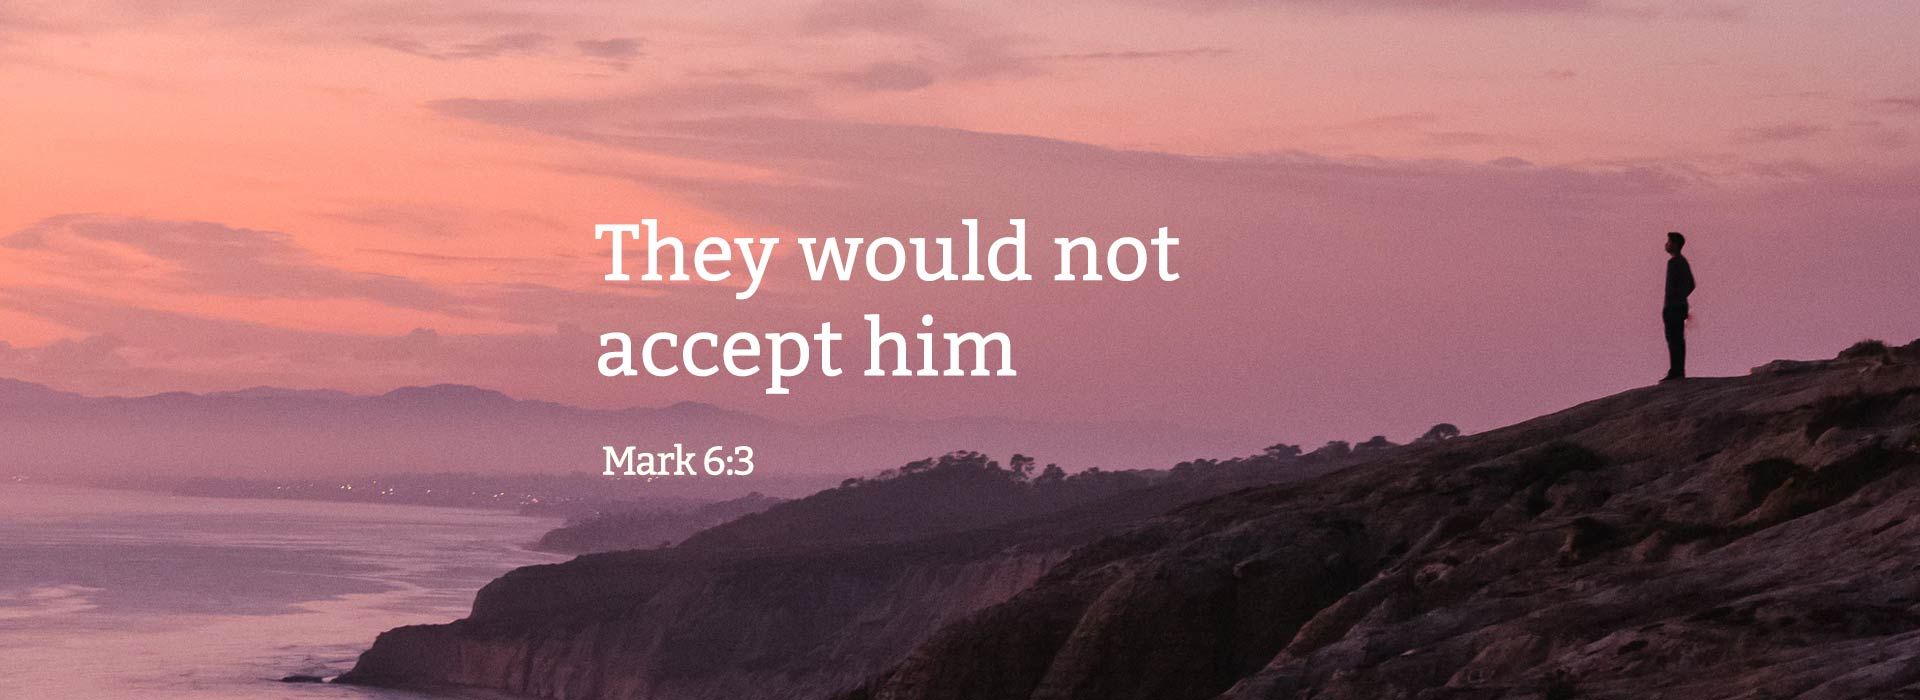 Mark 6:3